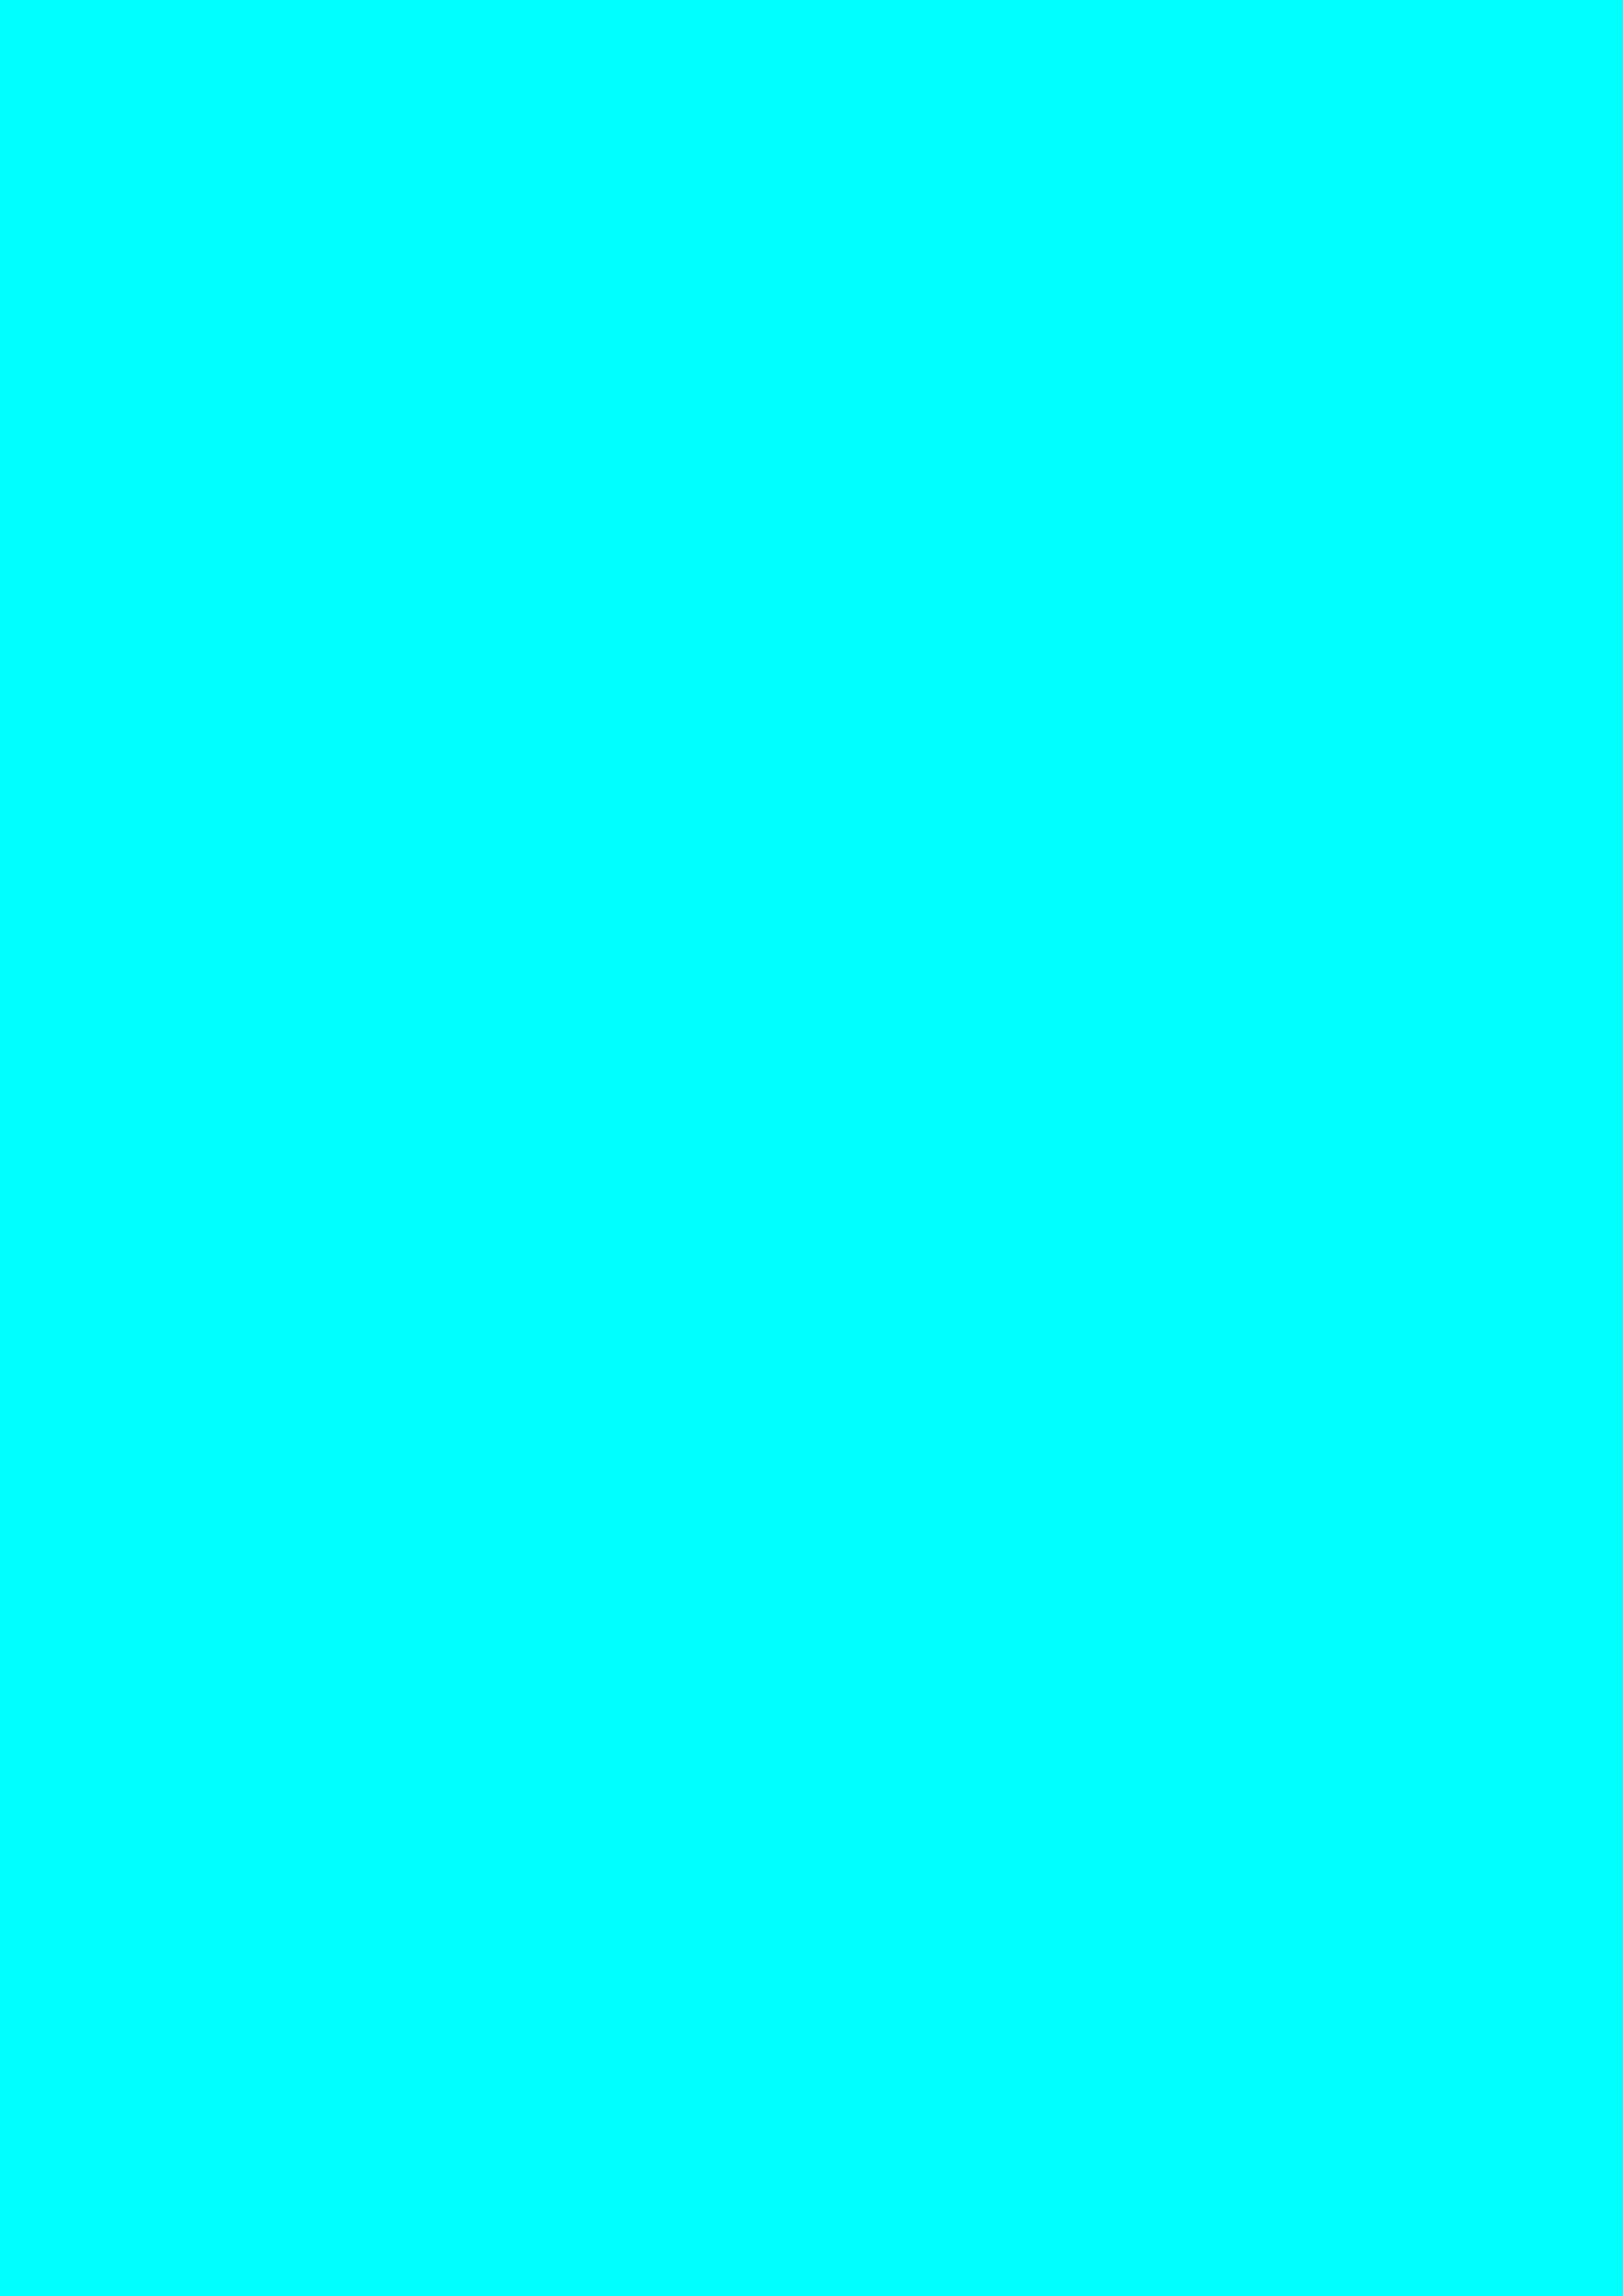 2480x3508 Aqua Solid Color Background